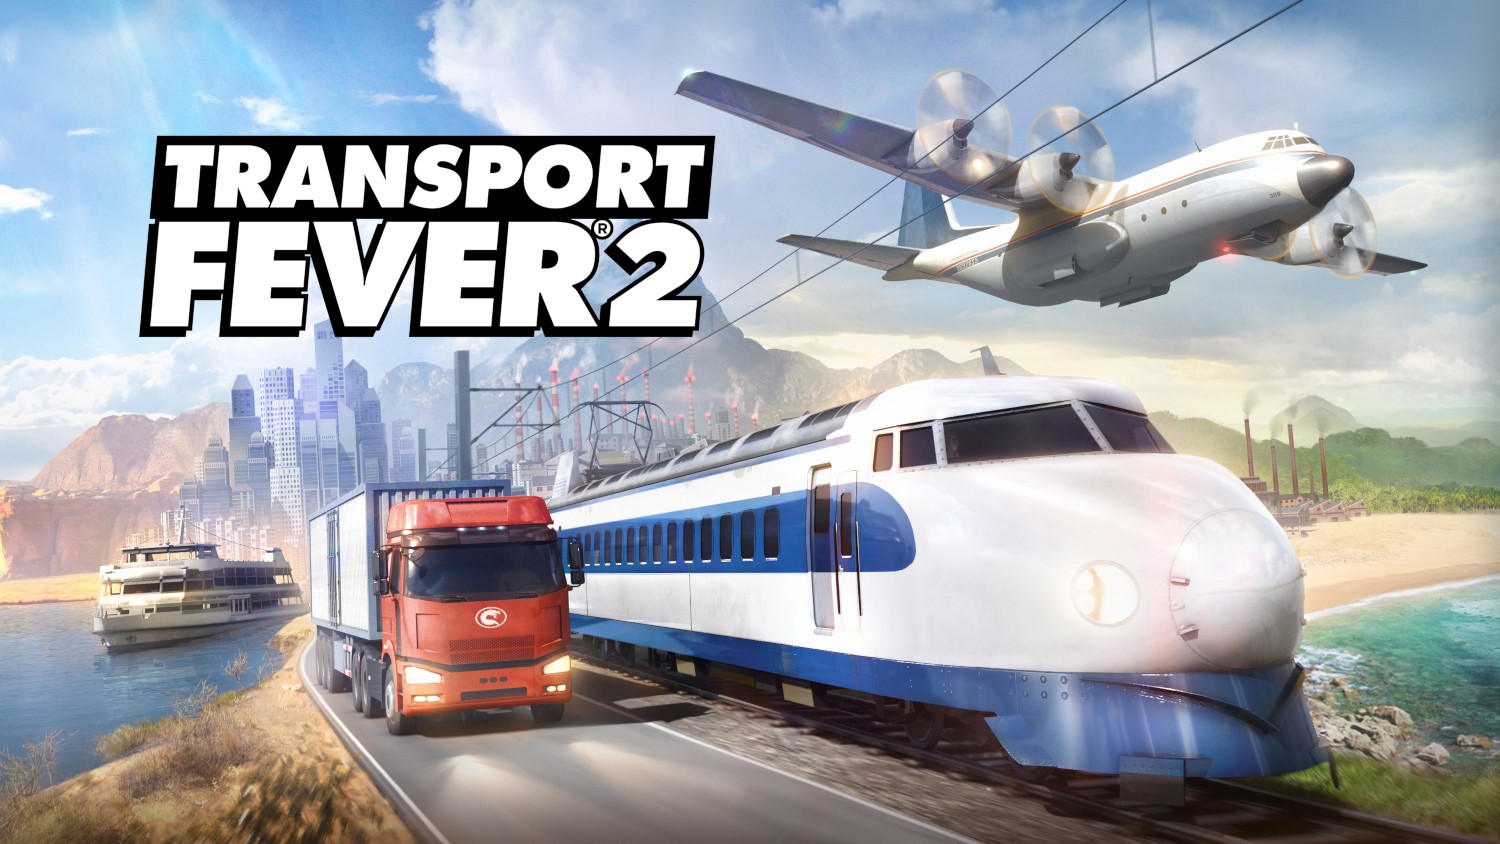 transit fever 2 download free